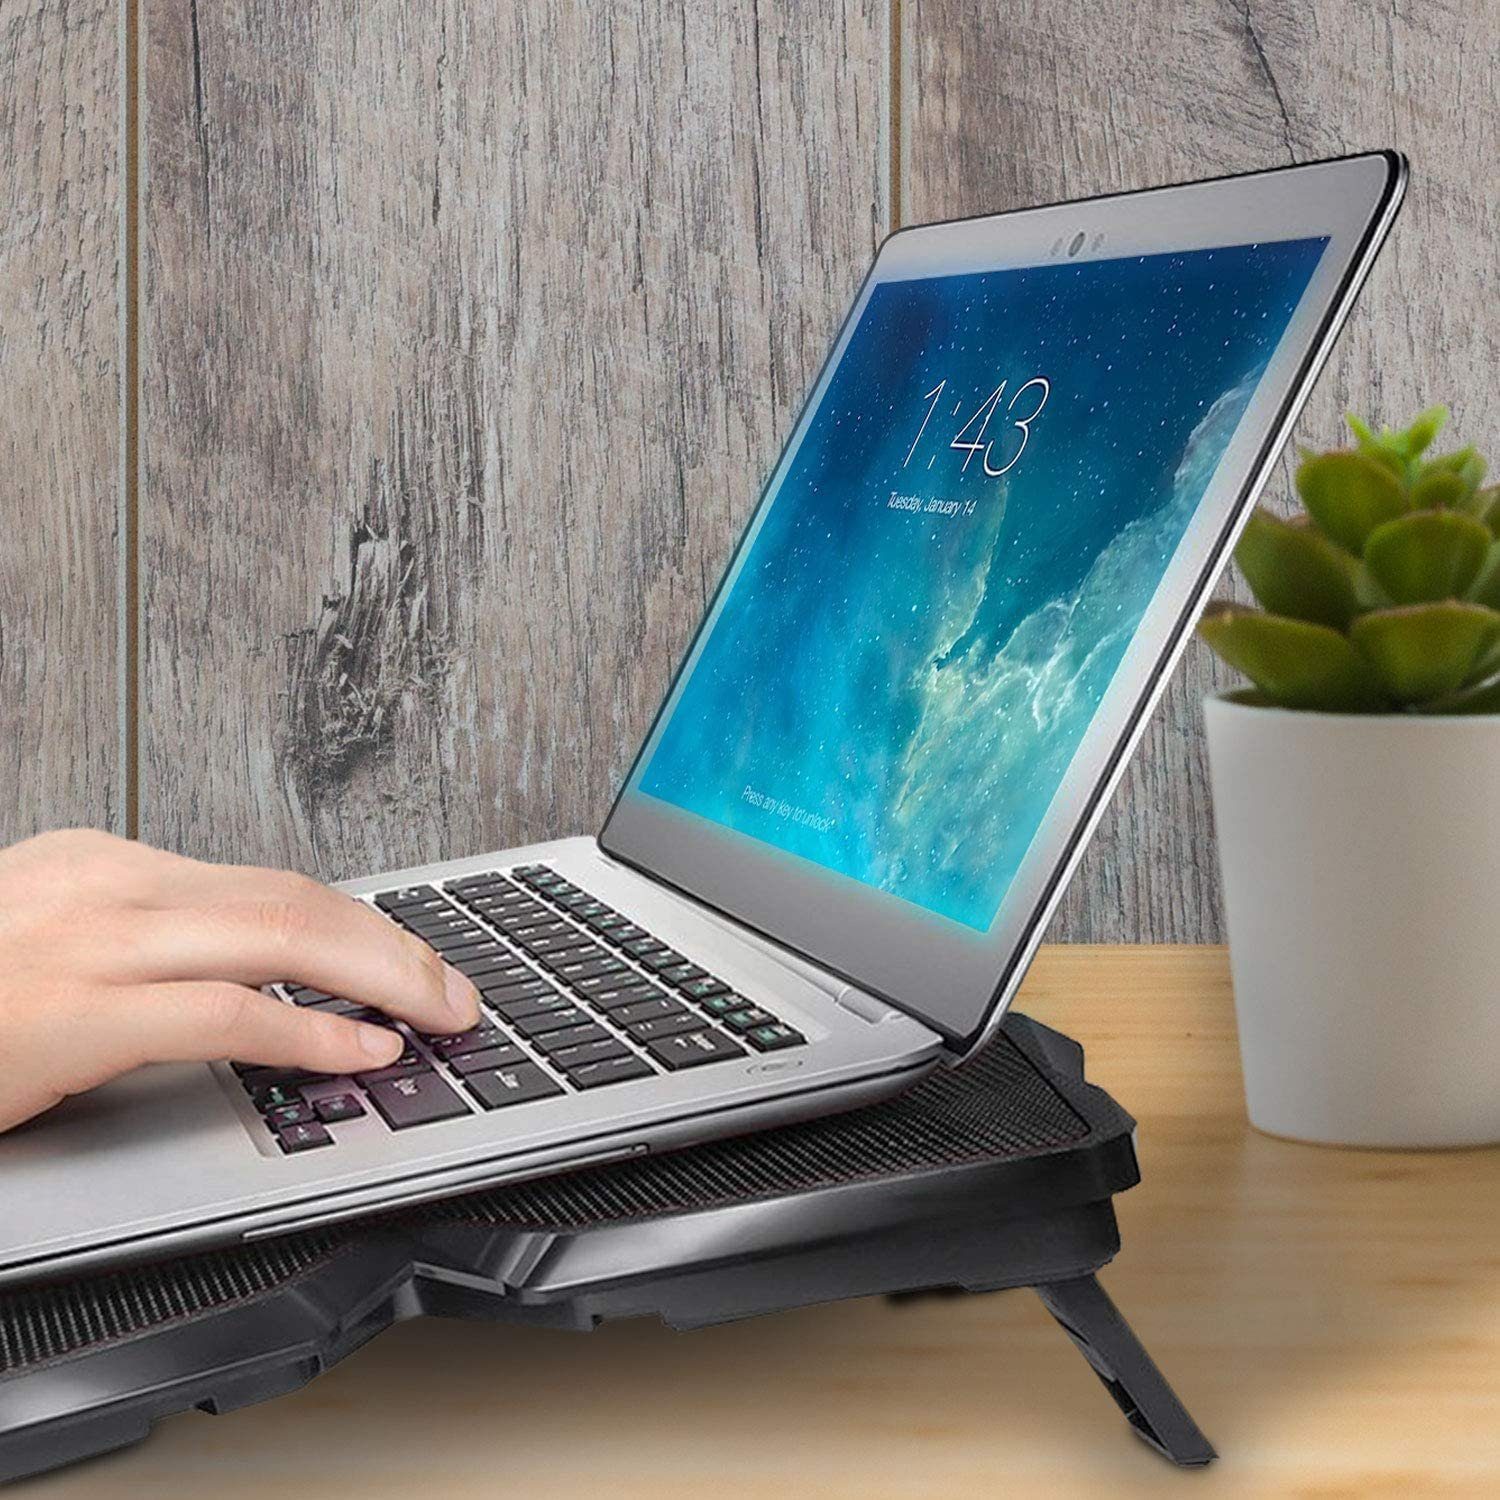 KLIM Notebook-Kühler Wind, Laptop-Kühlpad leistungsstärkste Metall Kühlventilator – Weiß schnelle der